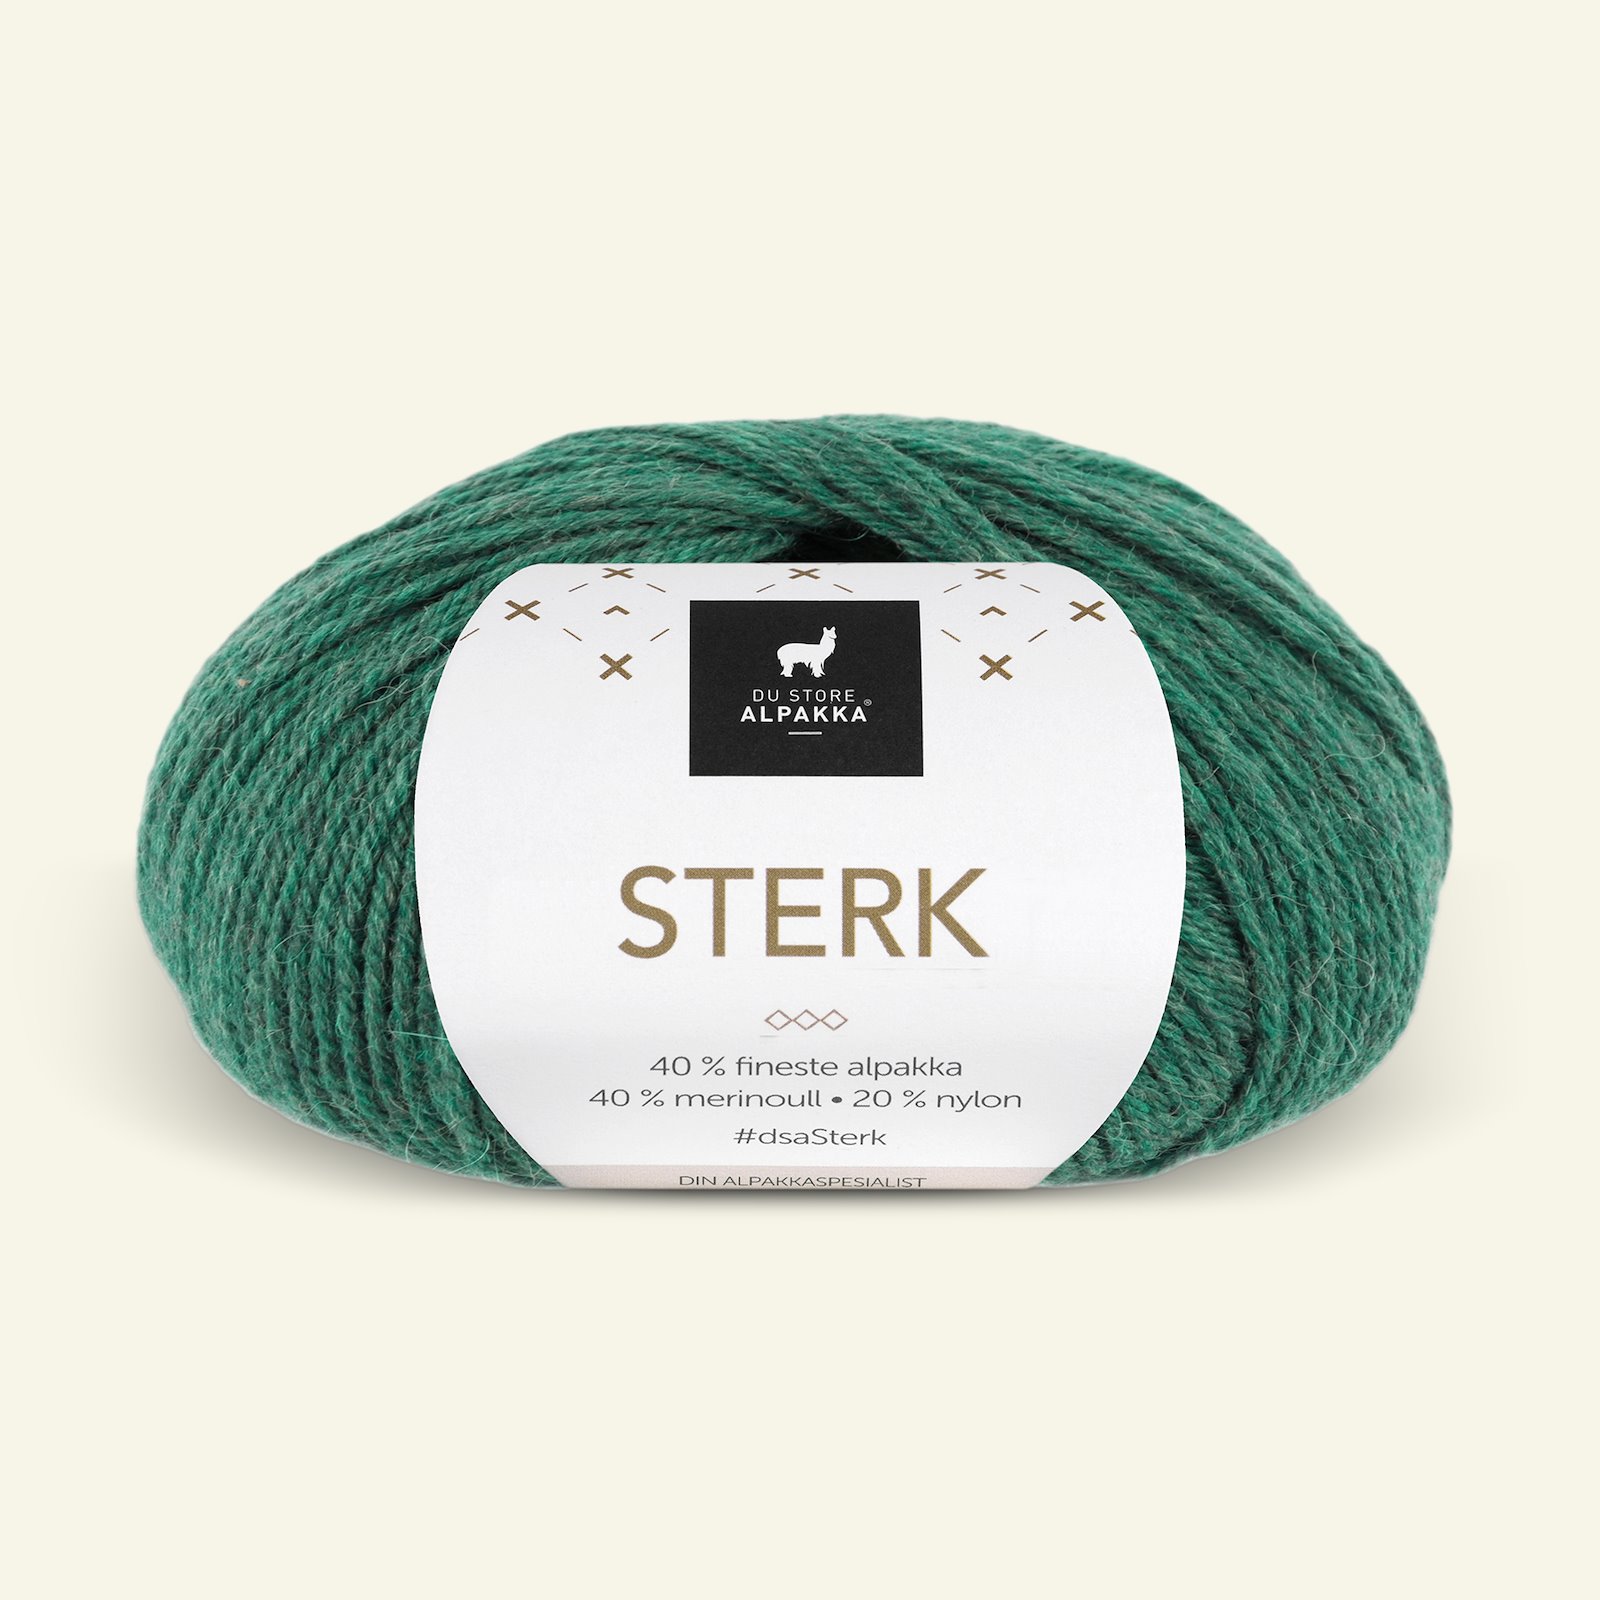 Du Store Alpakka, alpaca merino blandingsgarn, "Sterk", grøn melange (888) 90000689_pack